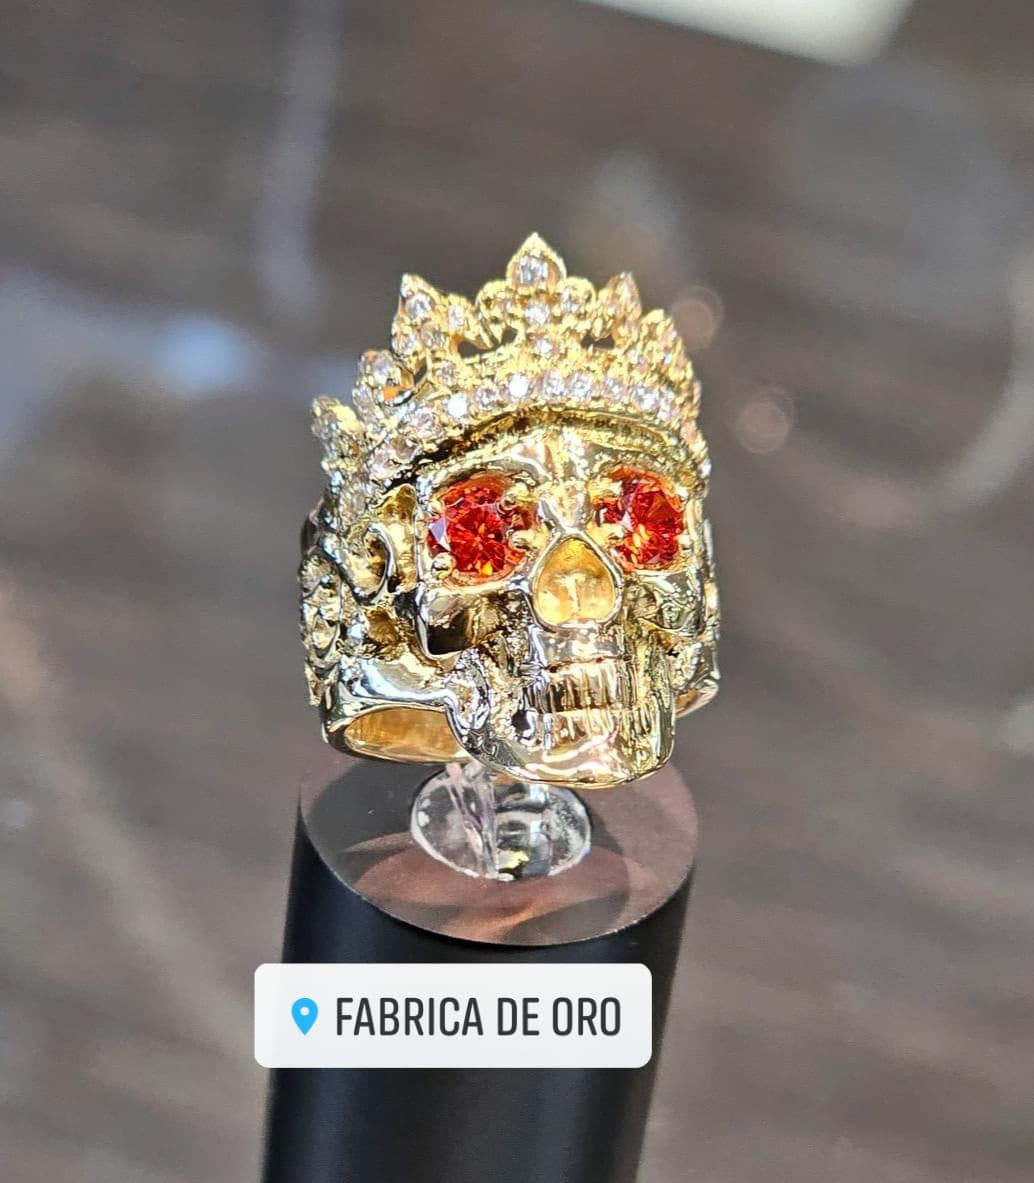 Crown of Thorns Skull Ring | deadringerjewelry